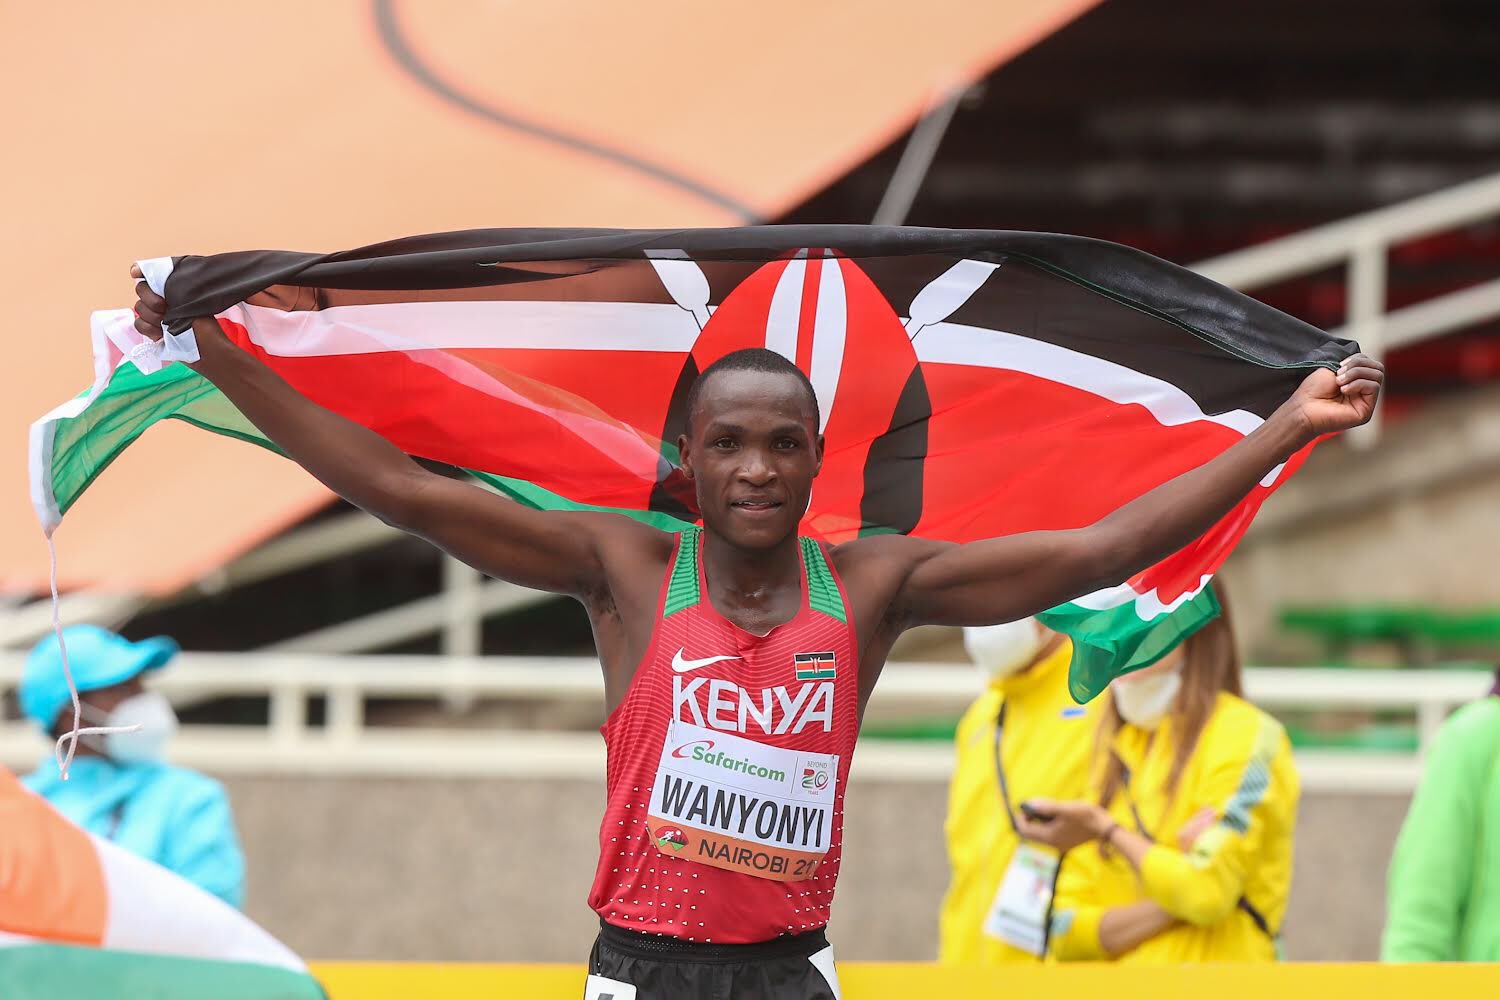 Le Kényan Heristone Wanyonyi a remporté le 10 km marche des Mondiaux U20 de Nairobi, au Kenya.